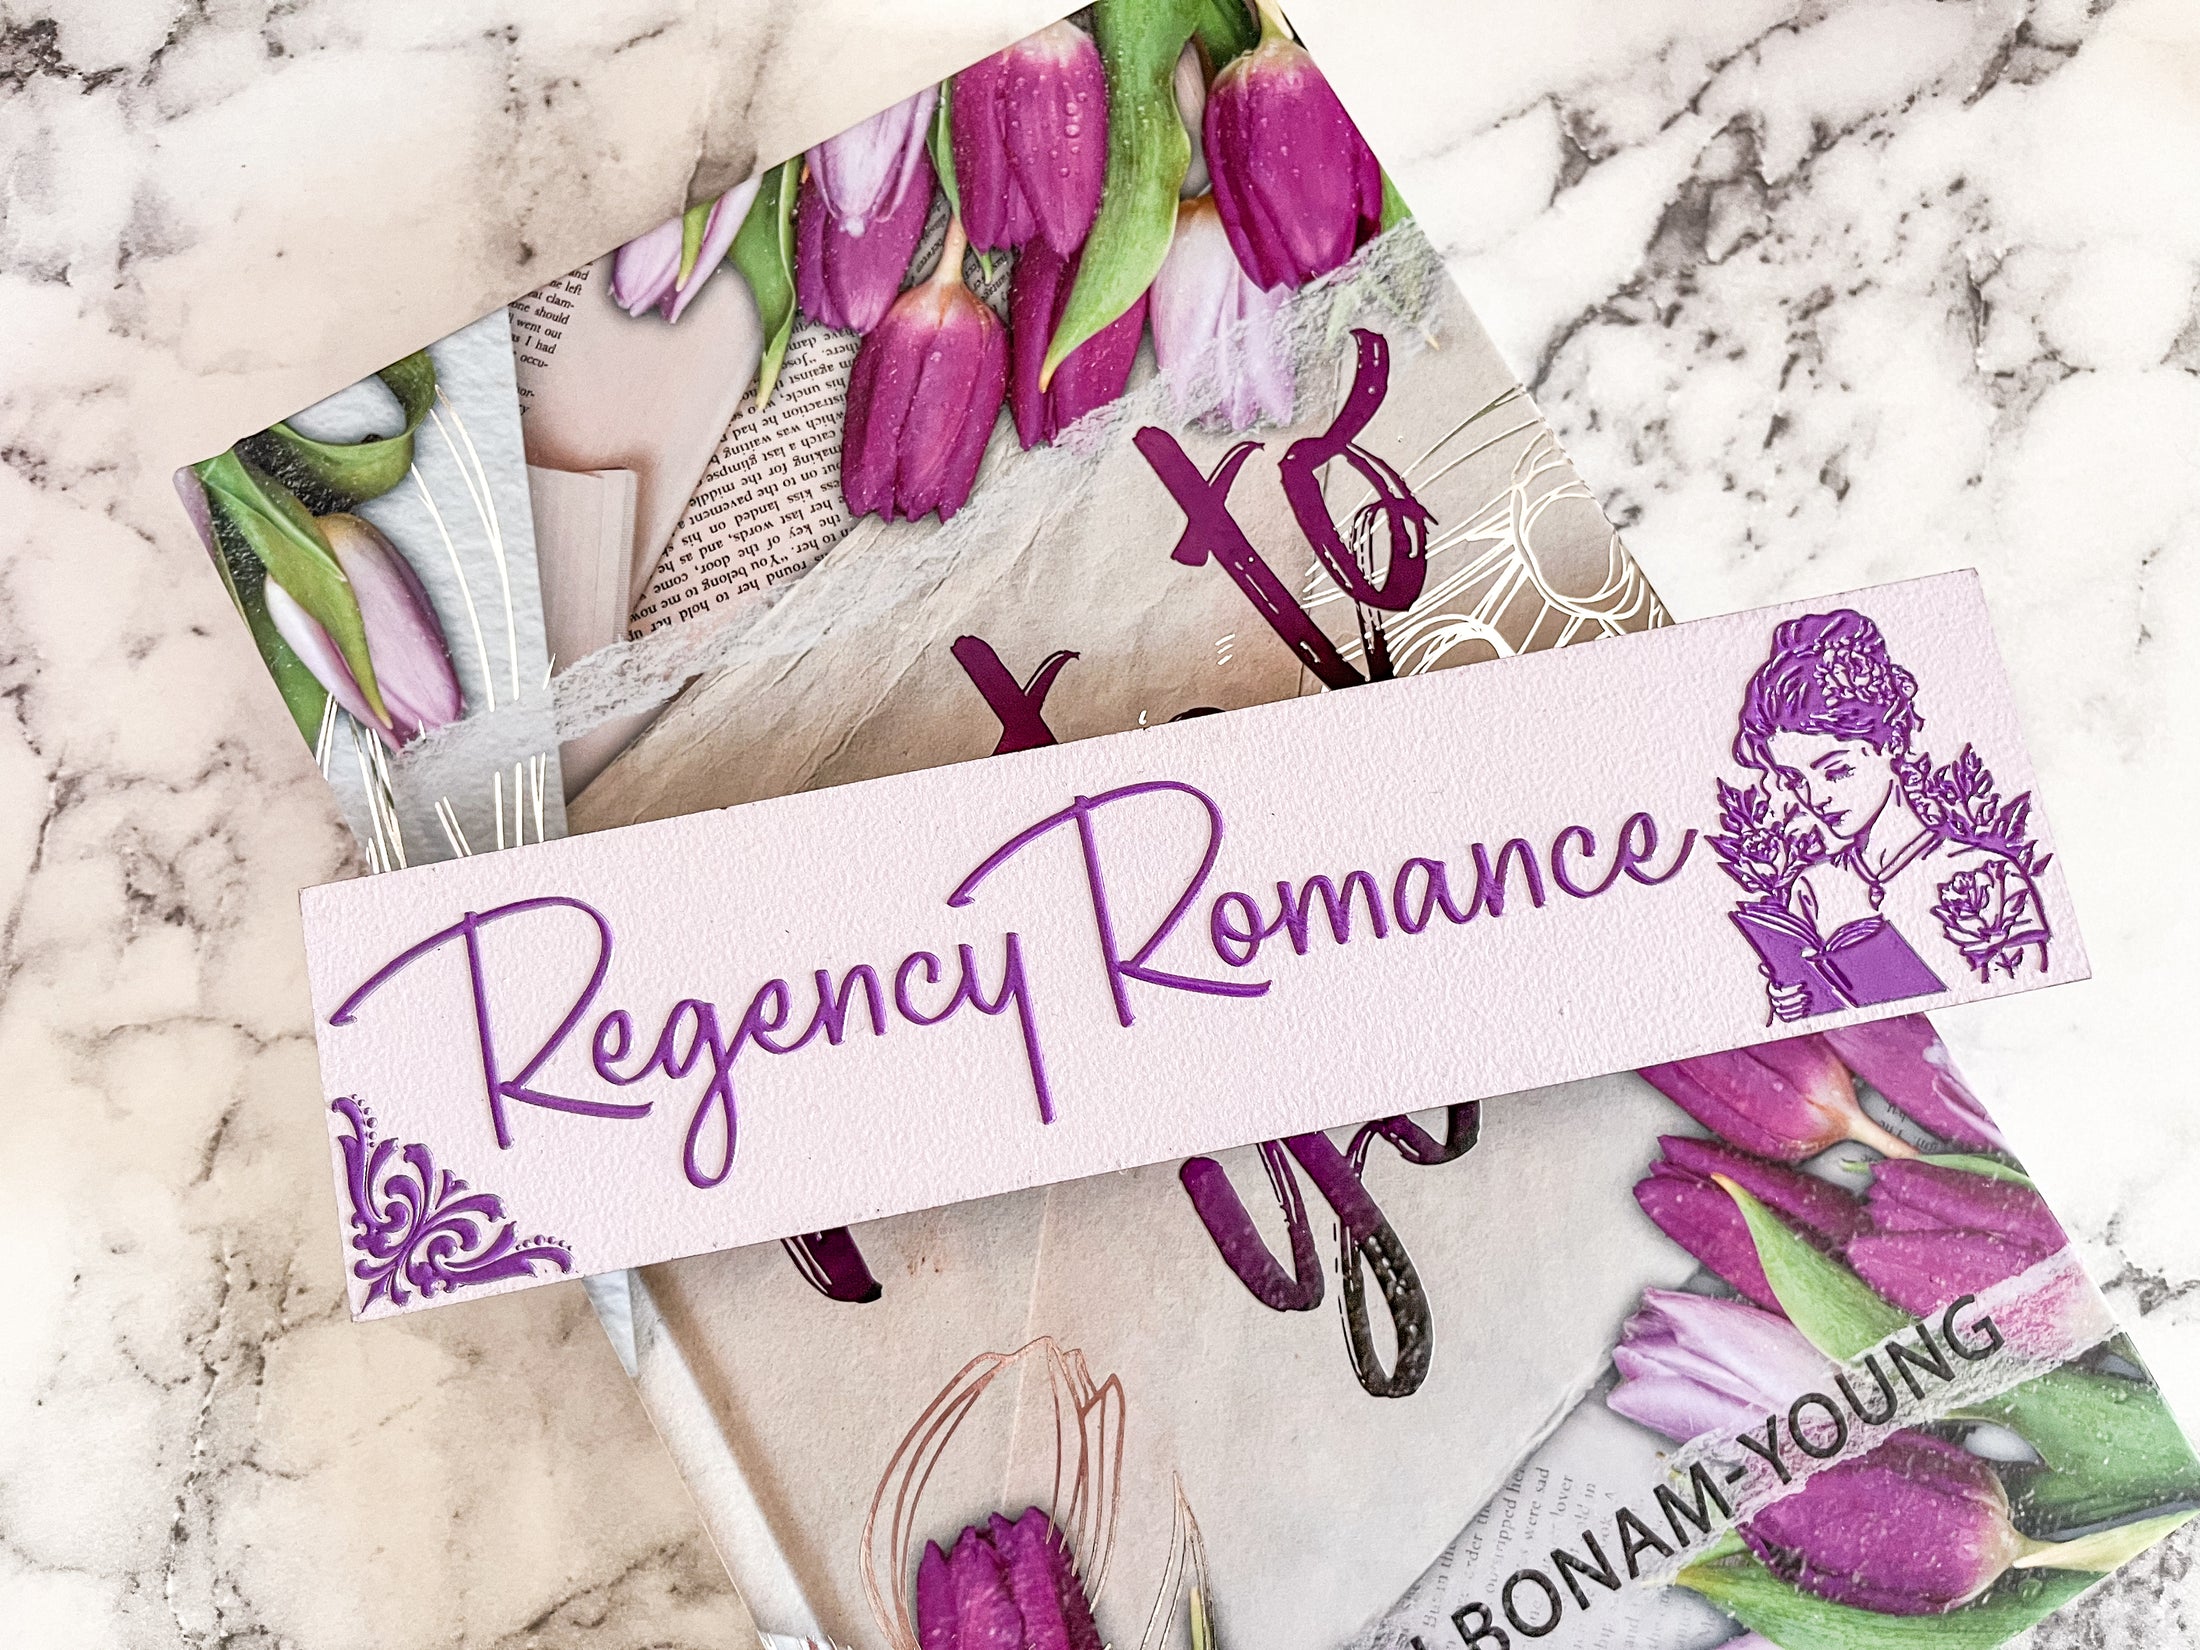 Regency Romance Shelf Mark™ in Light Purple & Dark Purple by FireDrake Artistry™